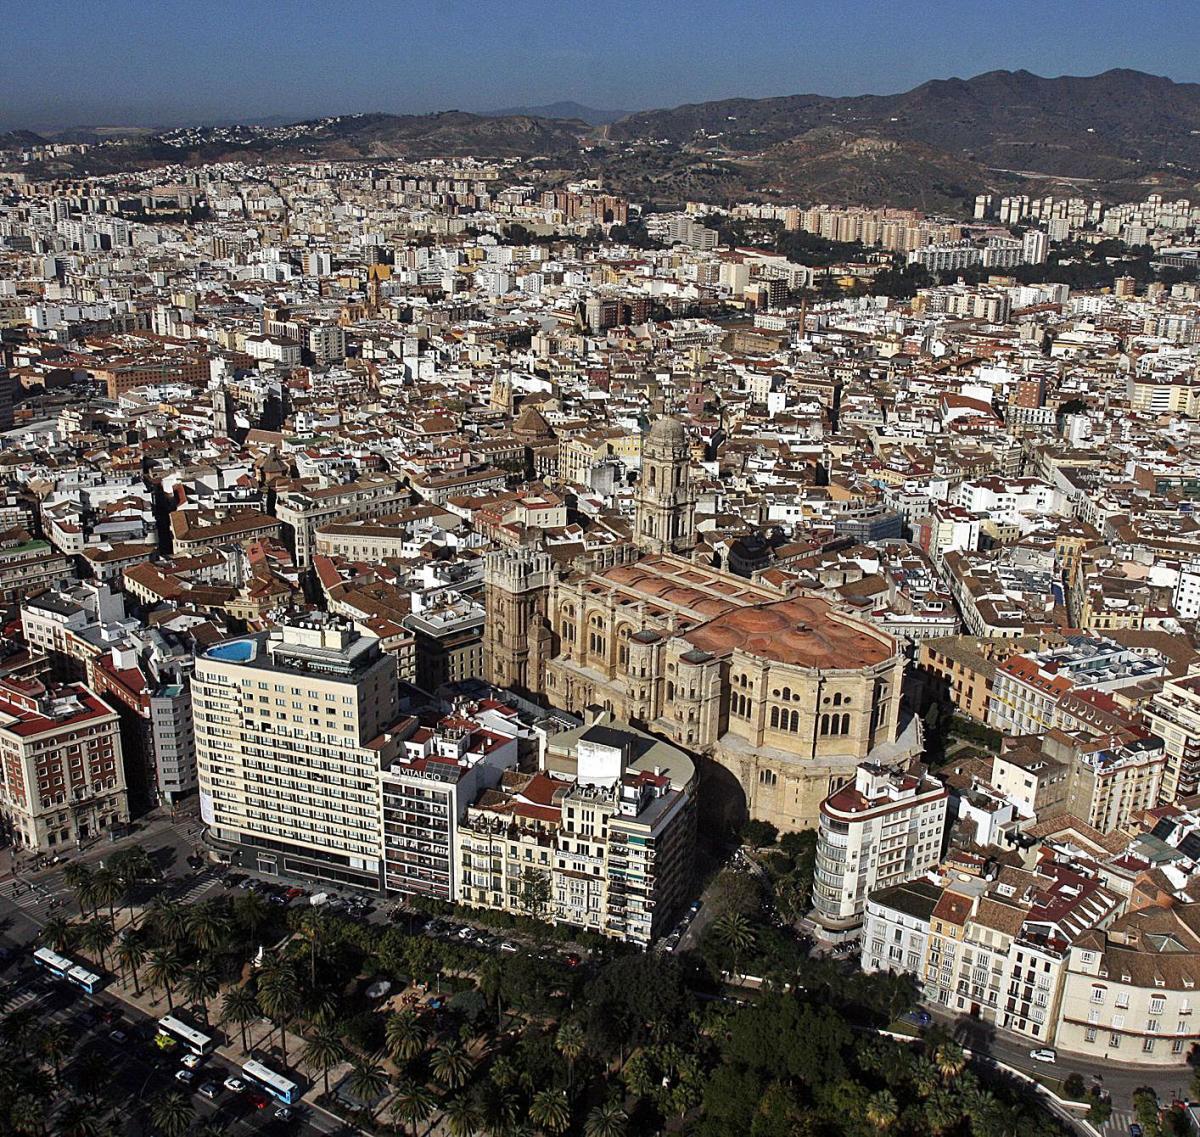 Imagen aérea del Centro Histórico de Málaga, que aglutina muchas viviendas turísticas.